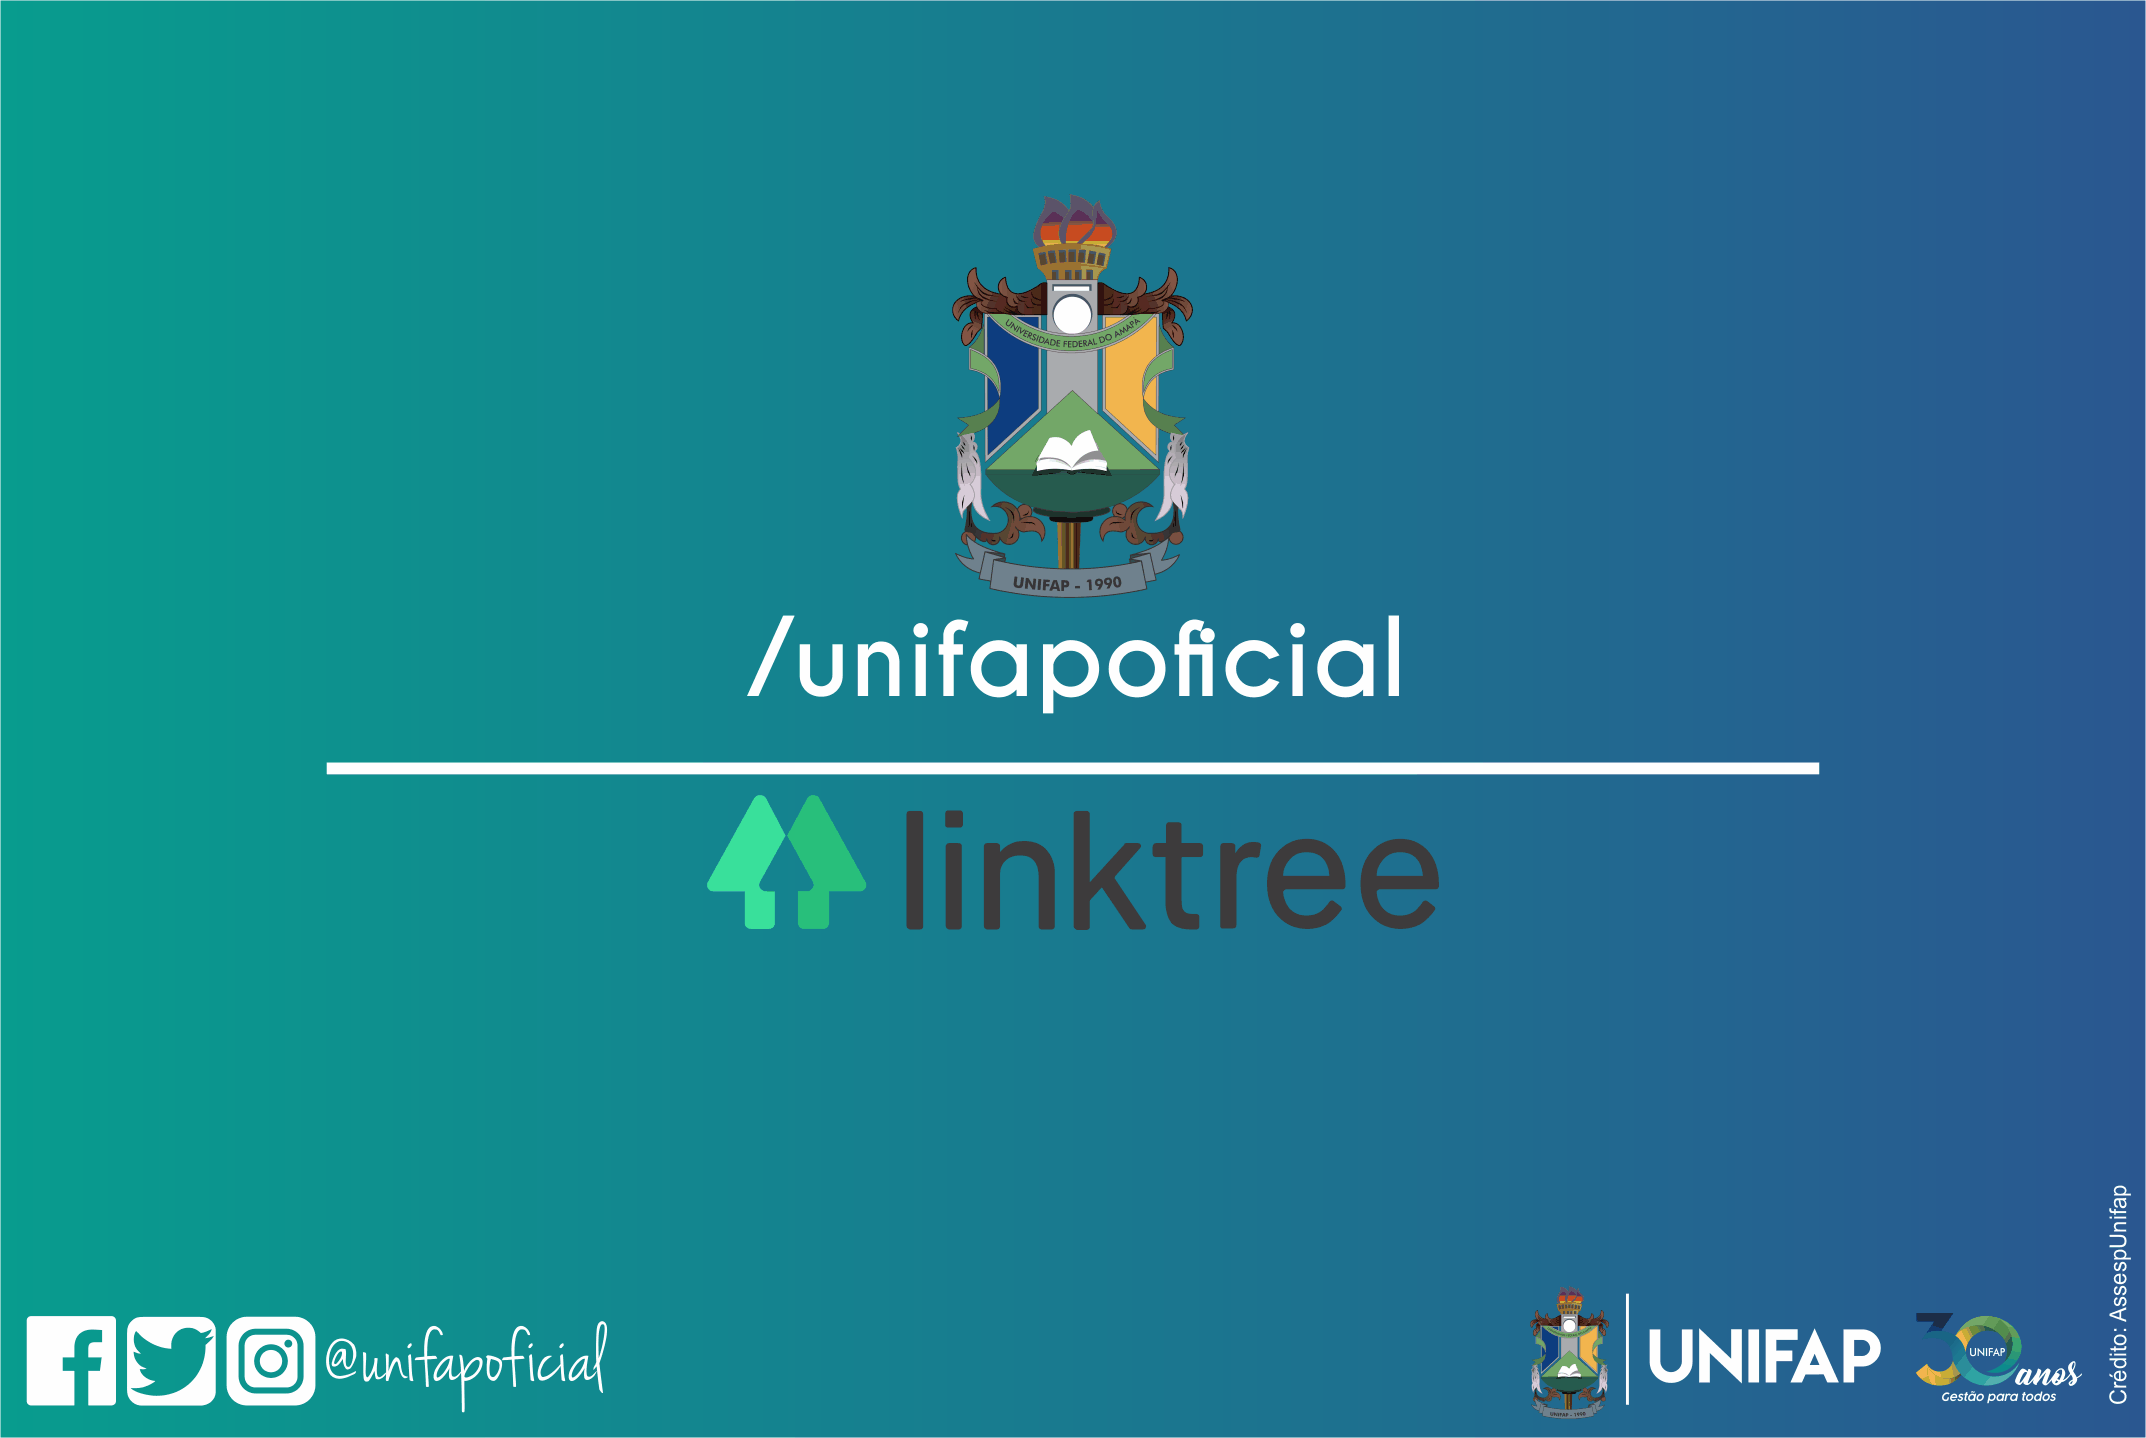 Confira os principais links da Unifap no Linktree